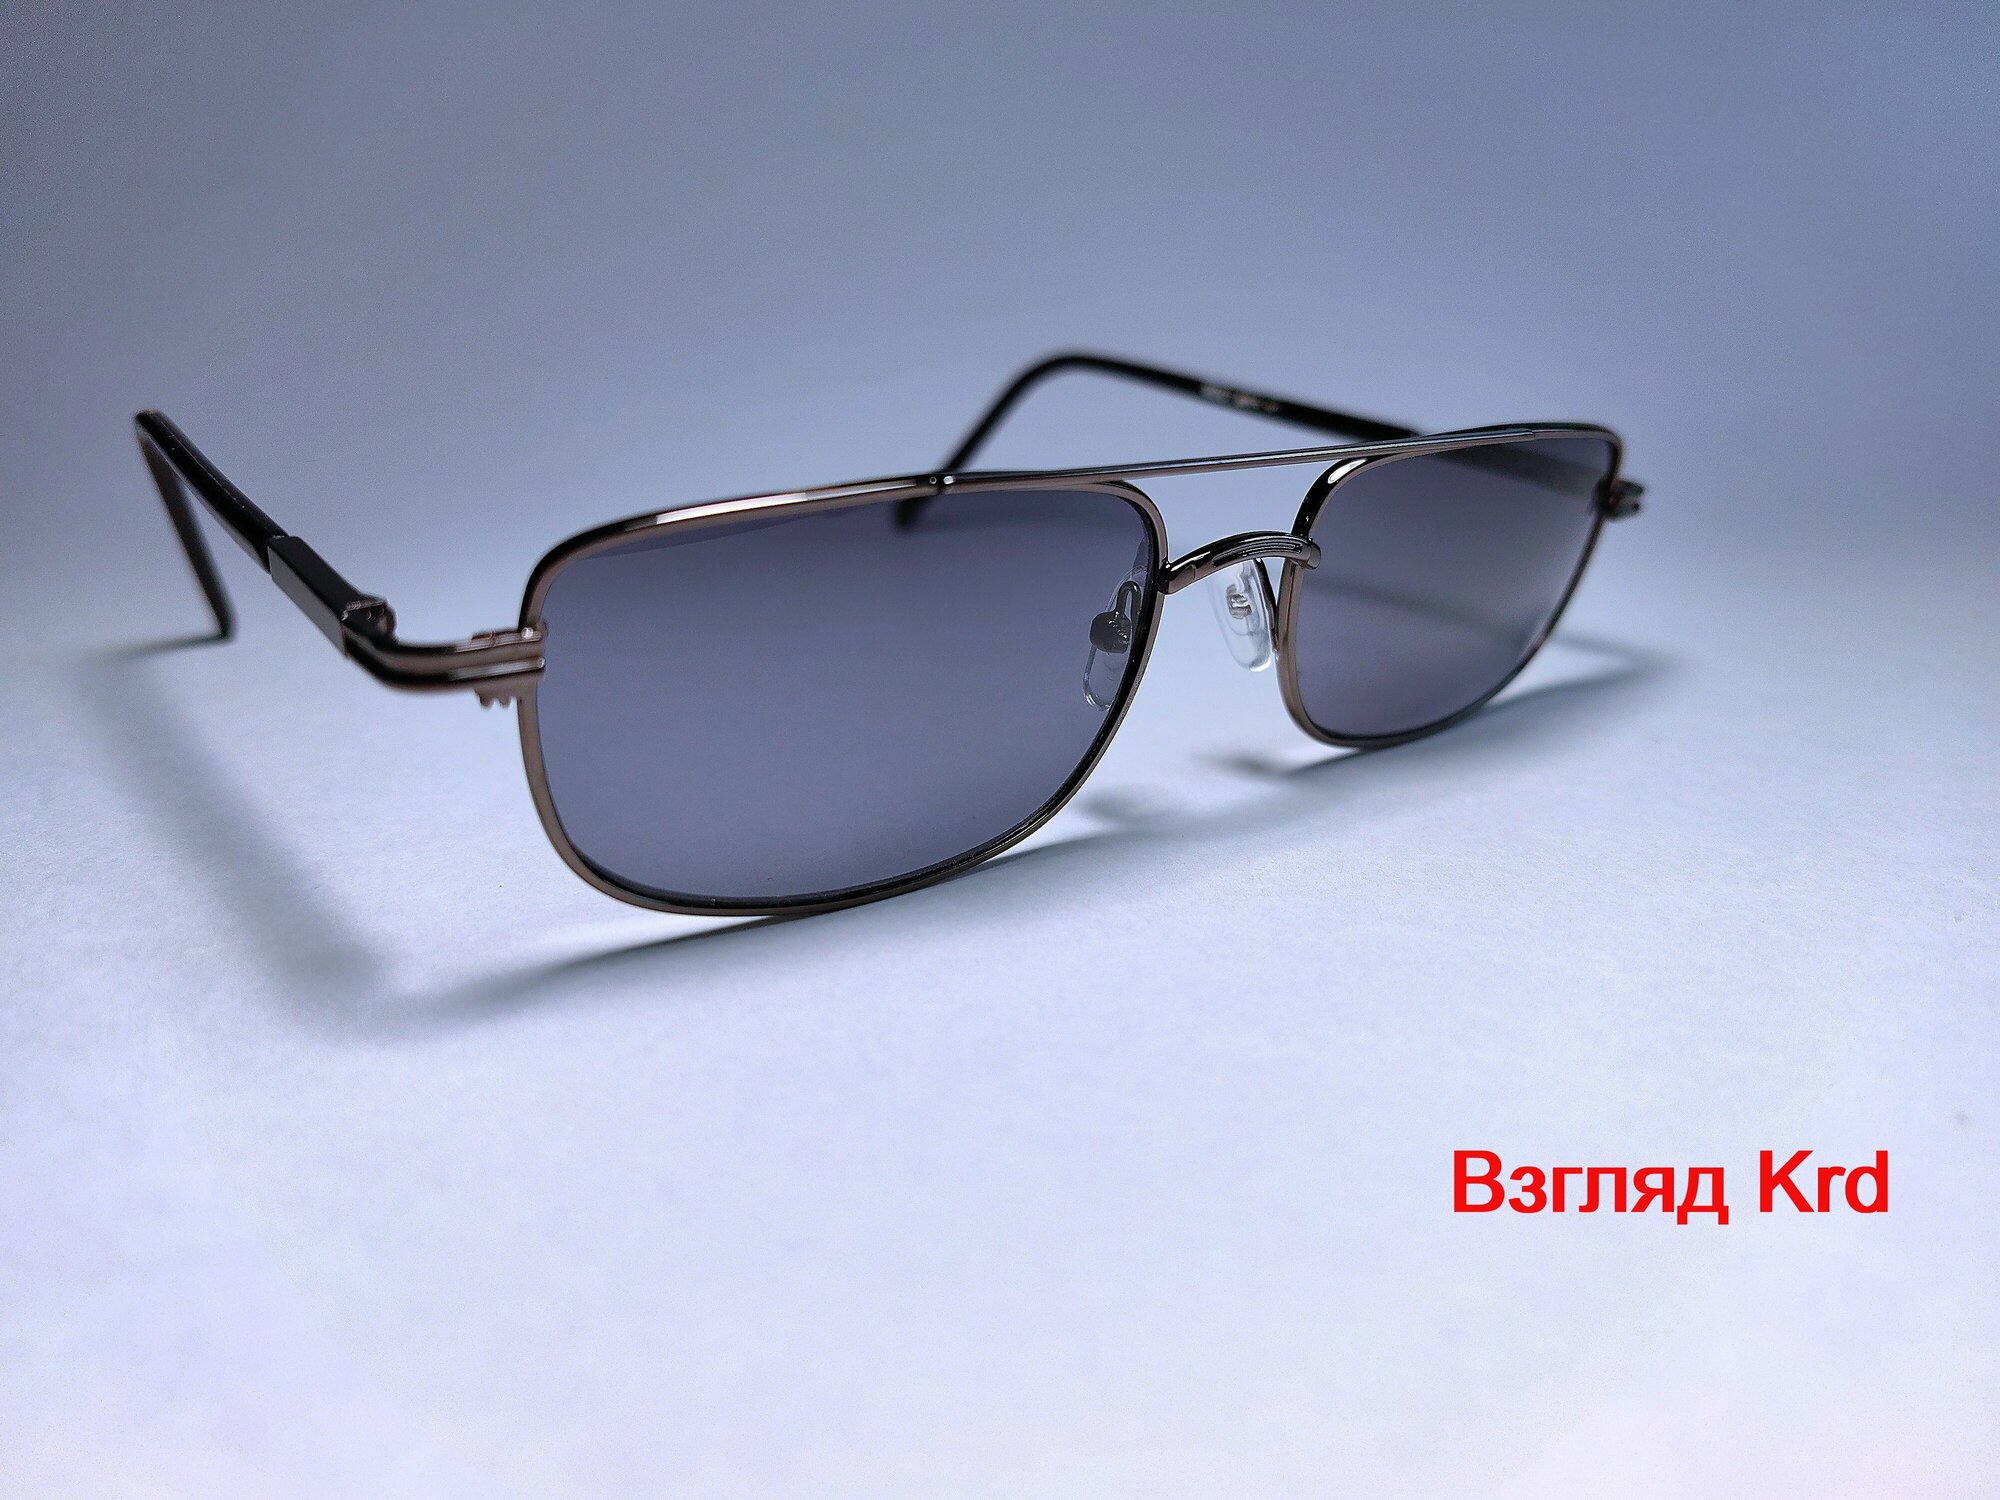 Готовые очки для зрения стекло +175 (хамелеон) с фотохромными линзами 62-64мм очки для чтения очки с диоптриями женские мужские оптика